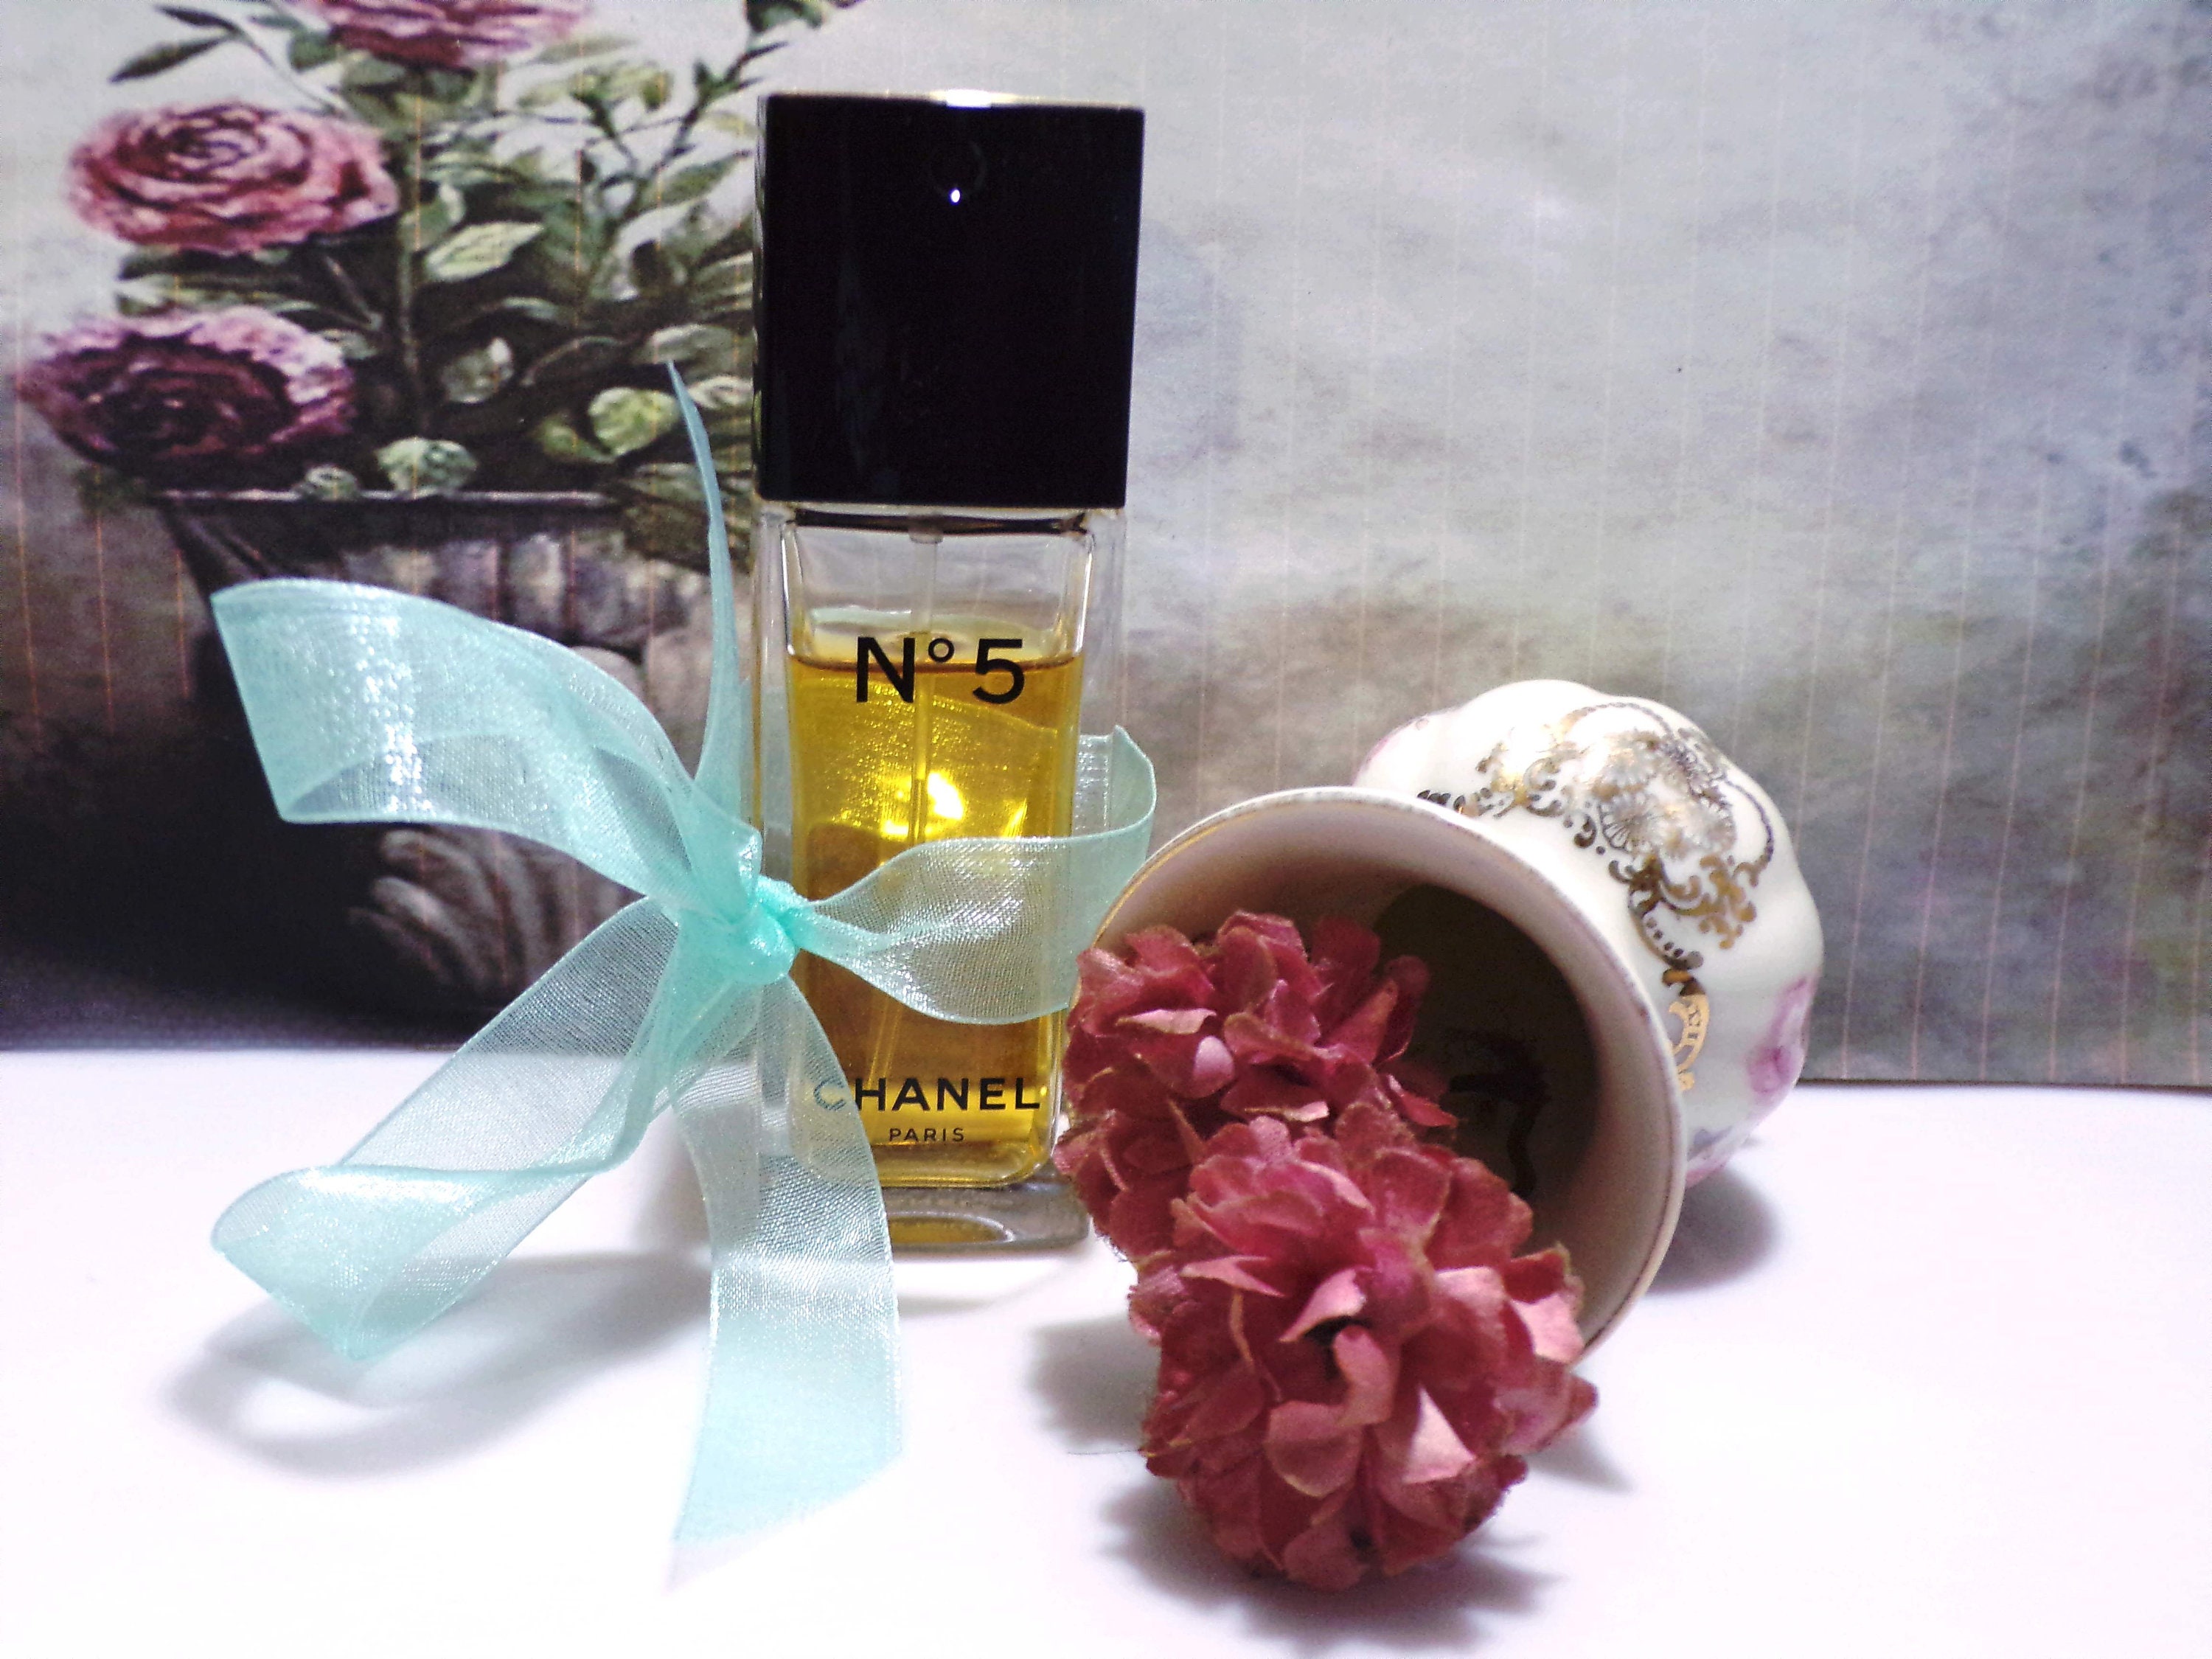 CHANEL Perfume - Chanel No 5 Perfume - Eau de Toilette Spray - 1.2 oz. 35ml.  - Paris/New York - Vintage Perfume - Used Item